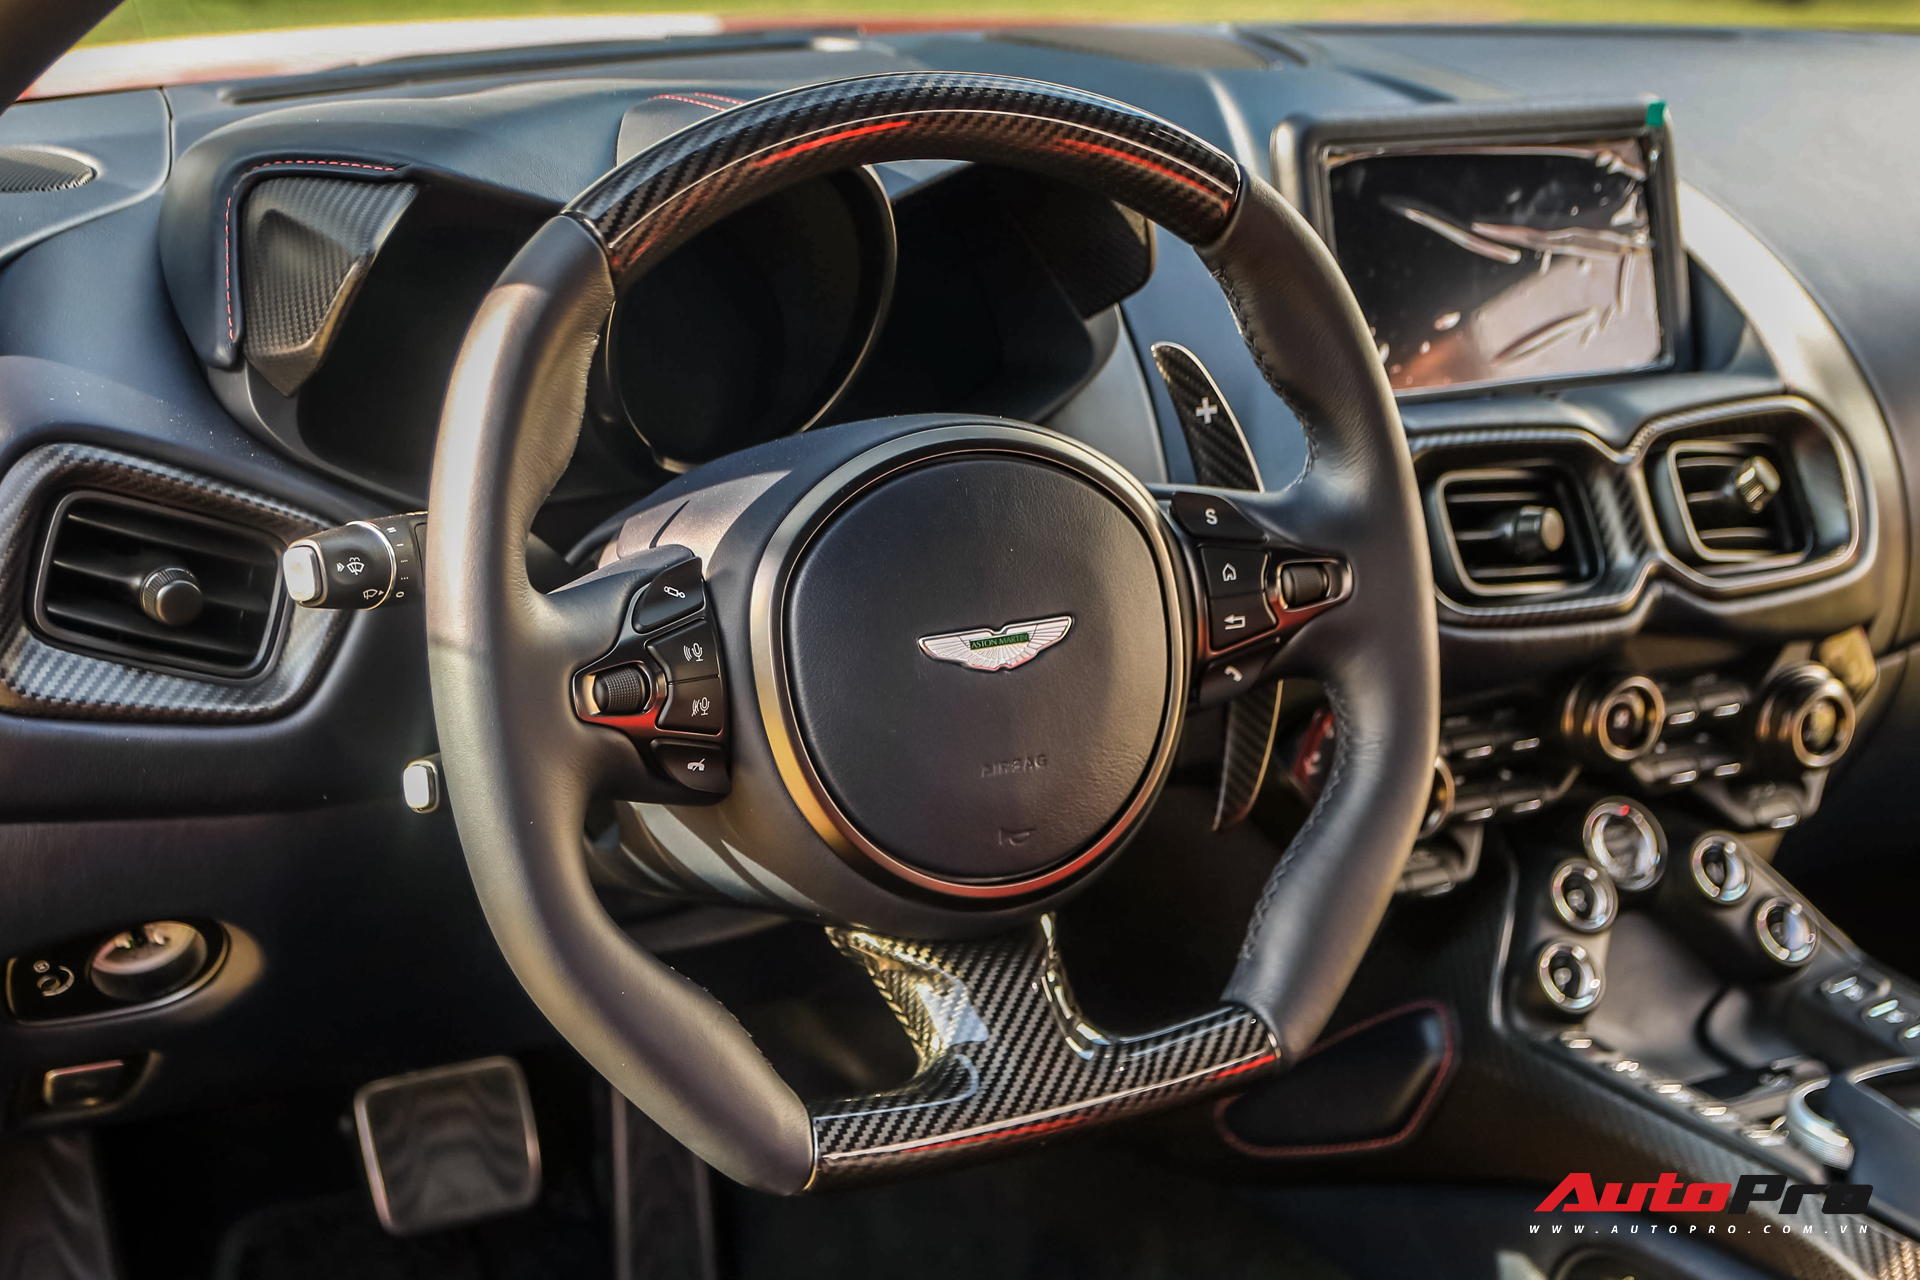 Minh nhựa tiết lộ biển số Aston Martin V8 Vantage vừa tậu với phong cách chụp ảnh chuẩn dân chơi - Ảnh 8.